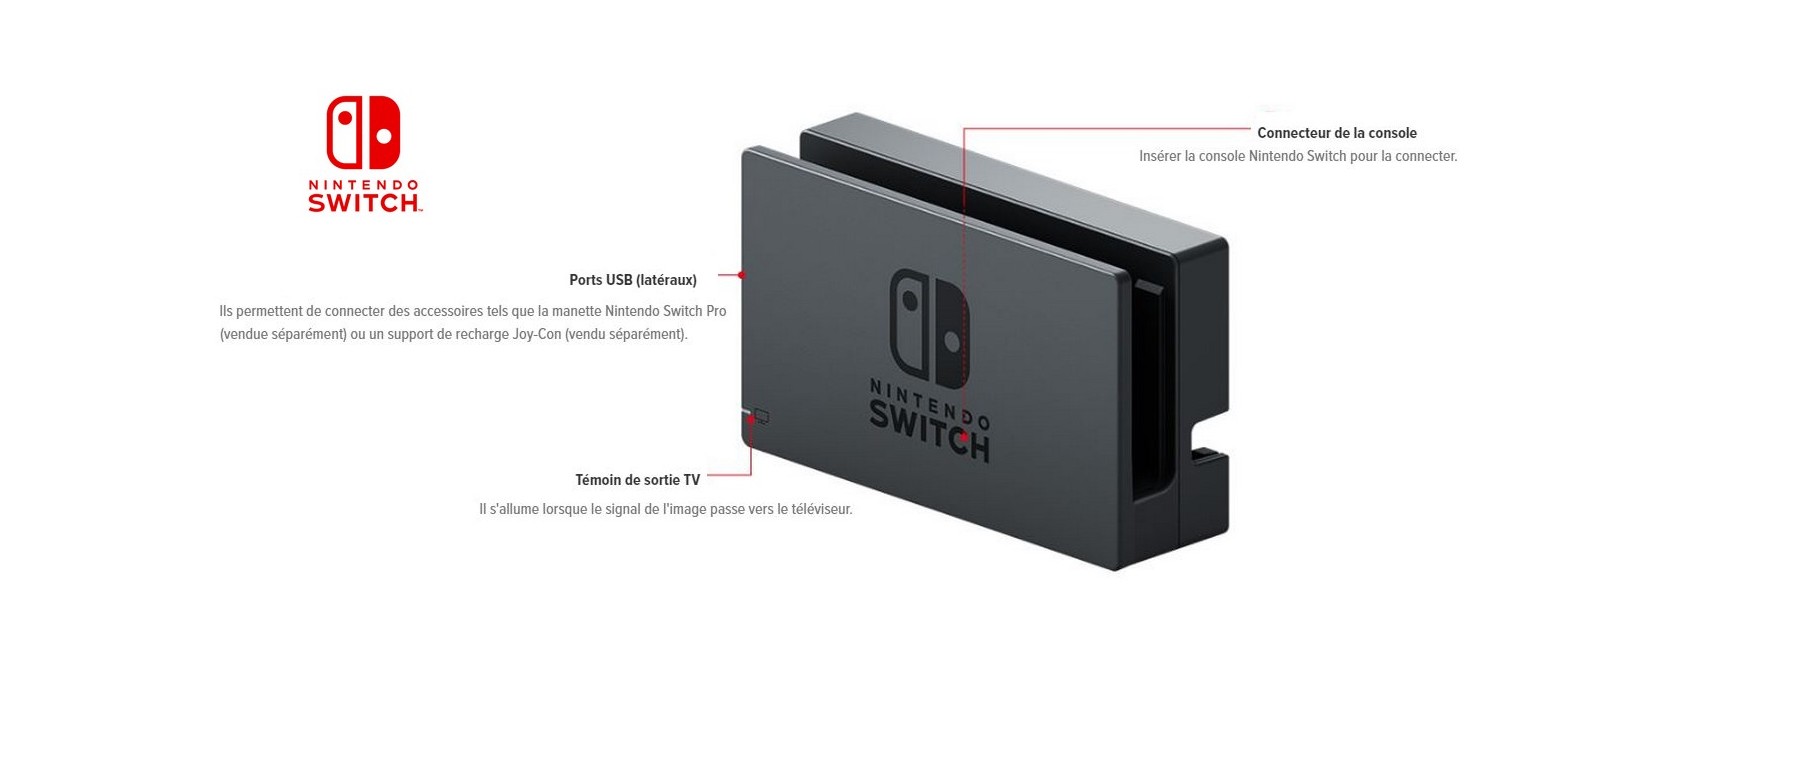 Nintendo Switch : un coup d'oeil à l'intérieur de la station d'accueil -  Nintendo Switch - Nintendo-Master